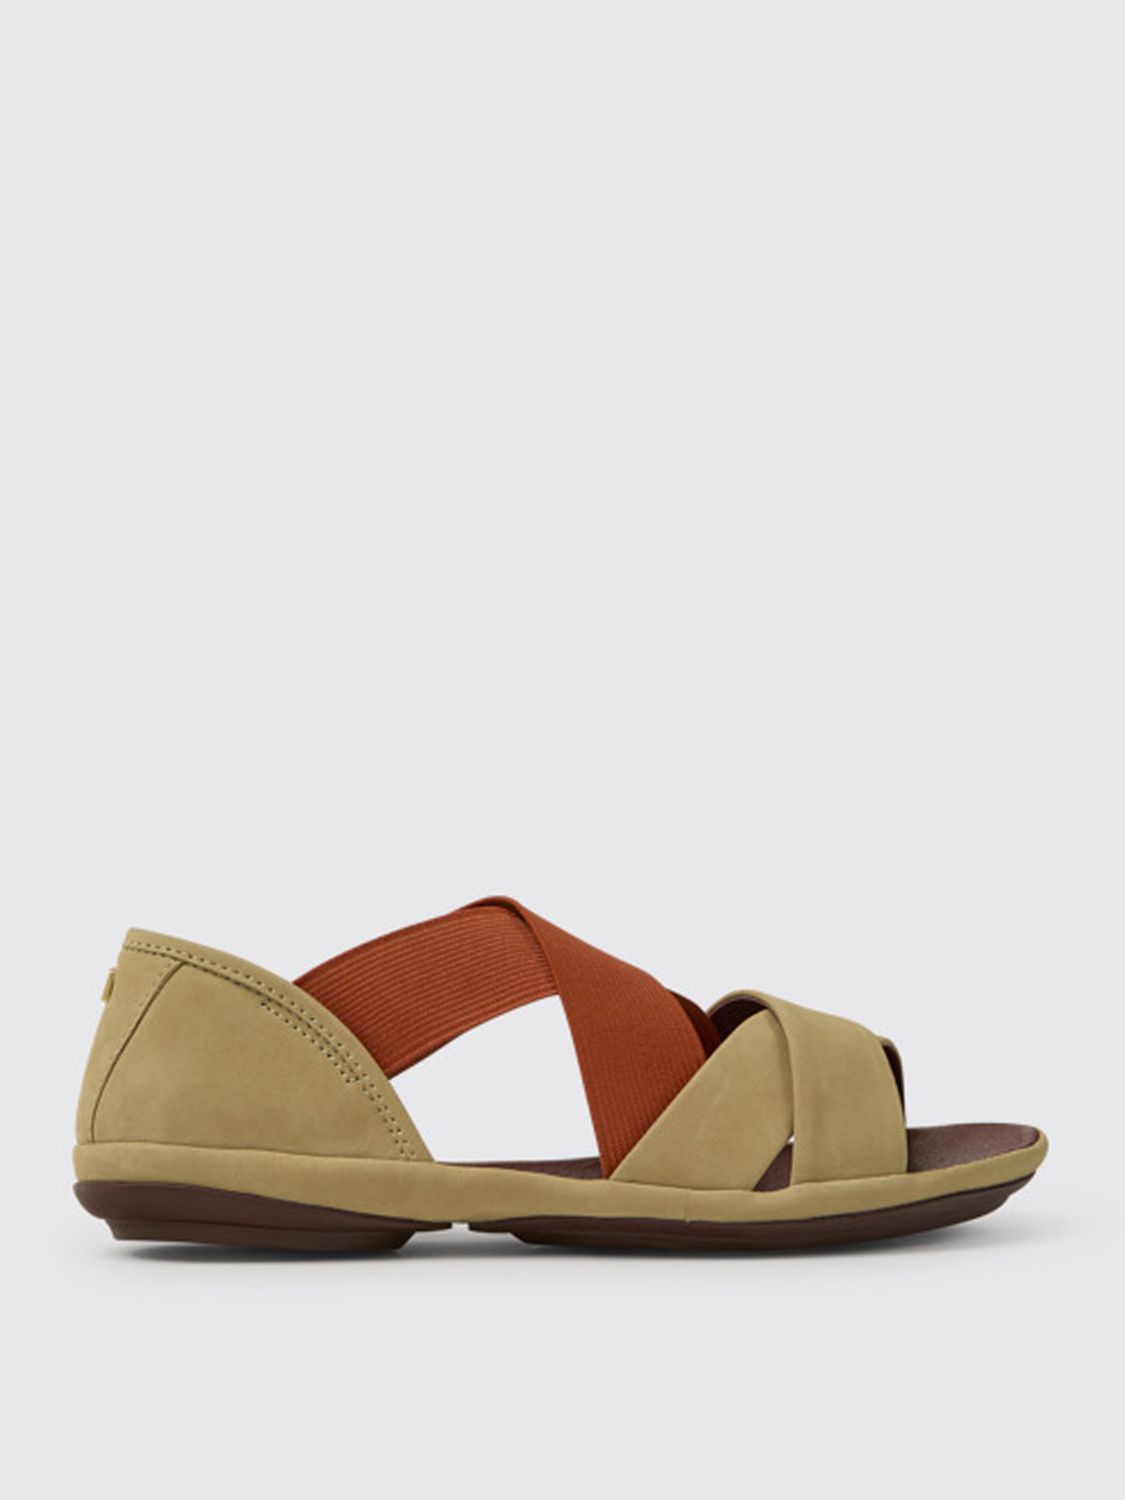 Tot ziens Beschietingen Pelagisch CAMPER: Right sandals in nubuck - Multicolor | Camper flat sandals  K201367-004 RIGHT online on GIGLIO.COM